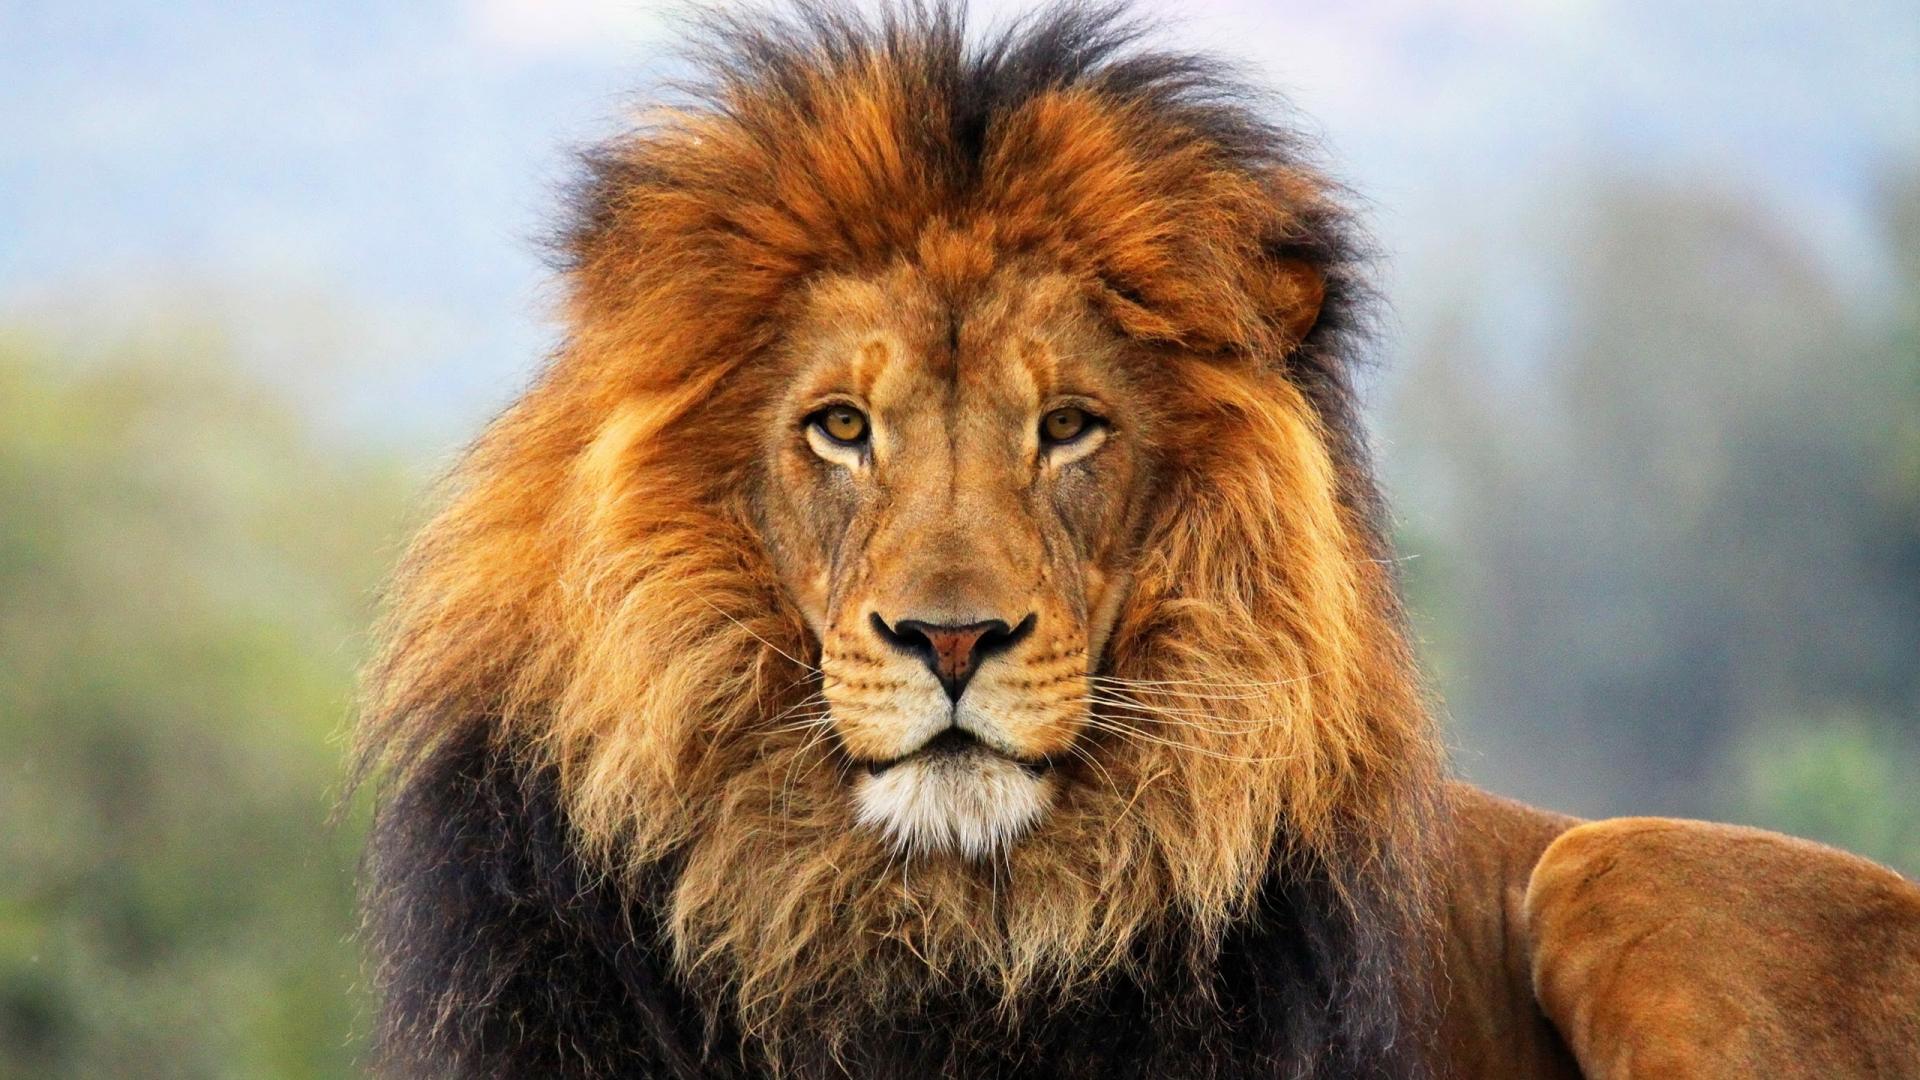 leone wallpaper hd 1080p,leone,natura,capelli,animale terrestre,leone masai